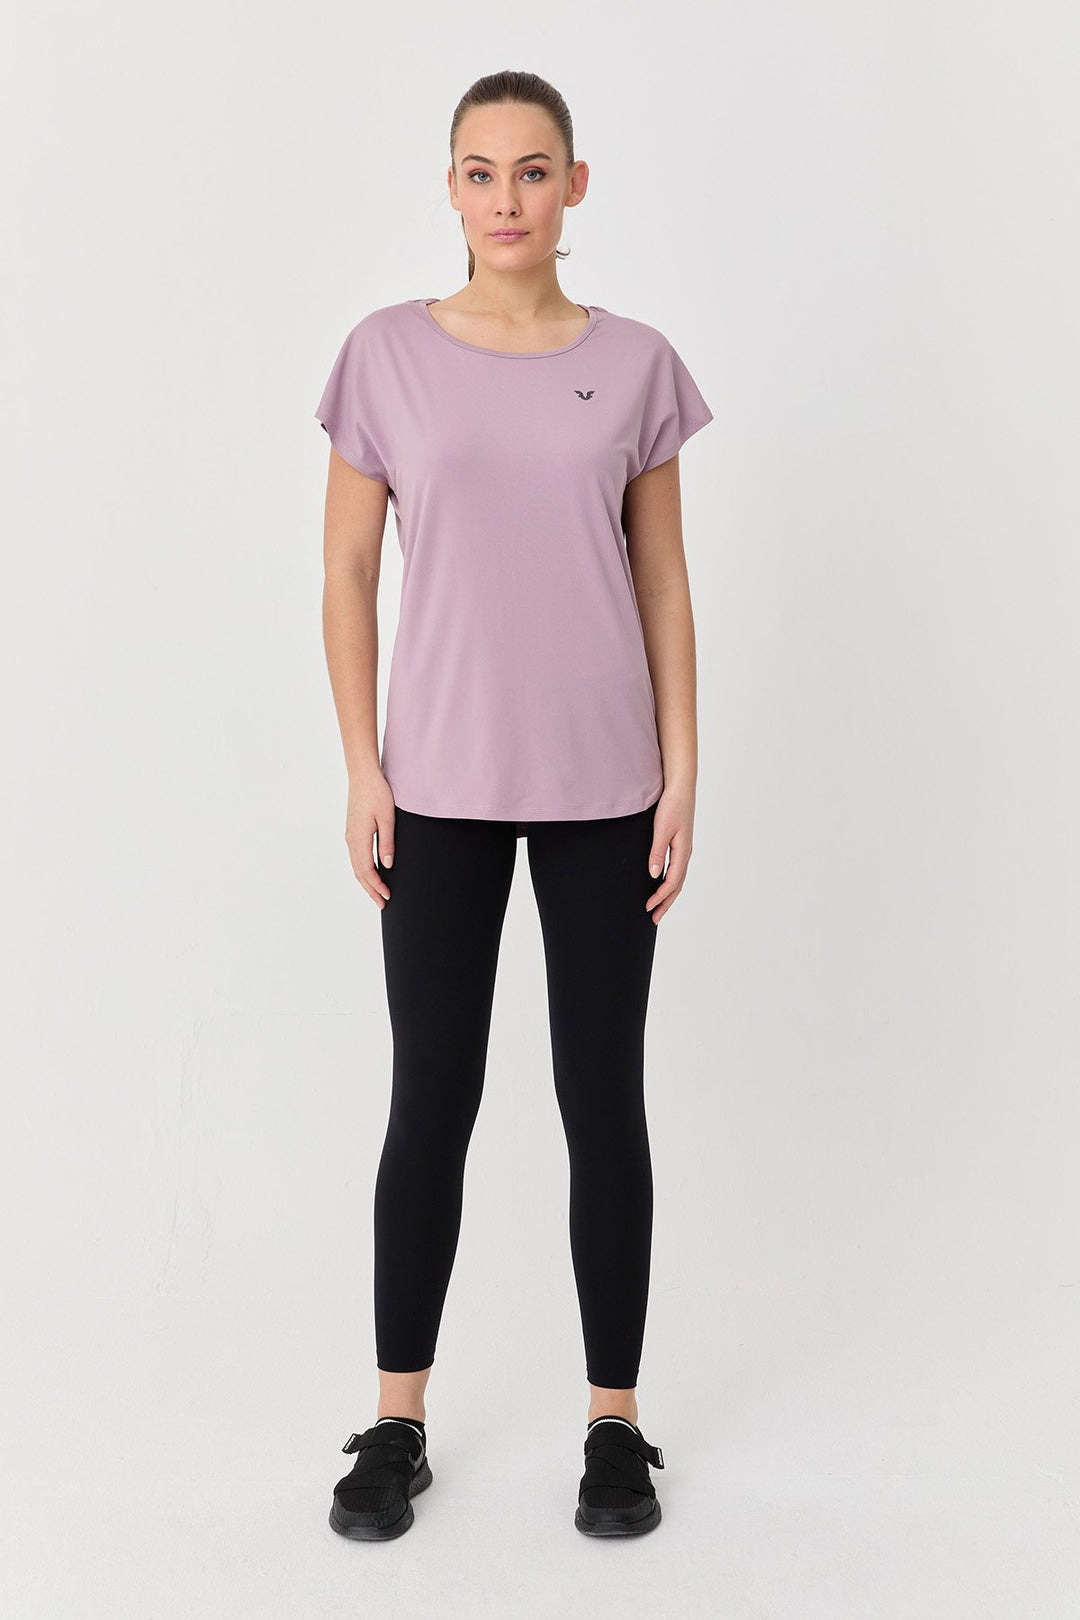 Damen Weichstrukturiertes Kurzarm-T-Shirt 9712